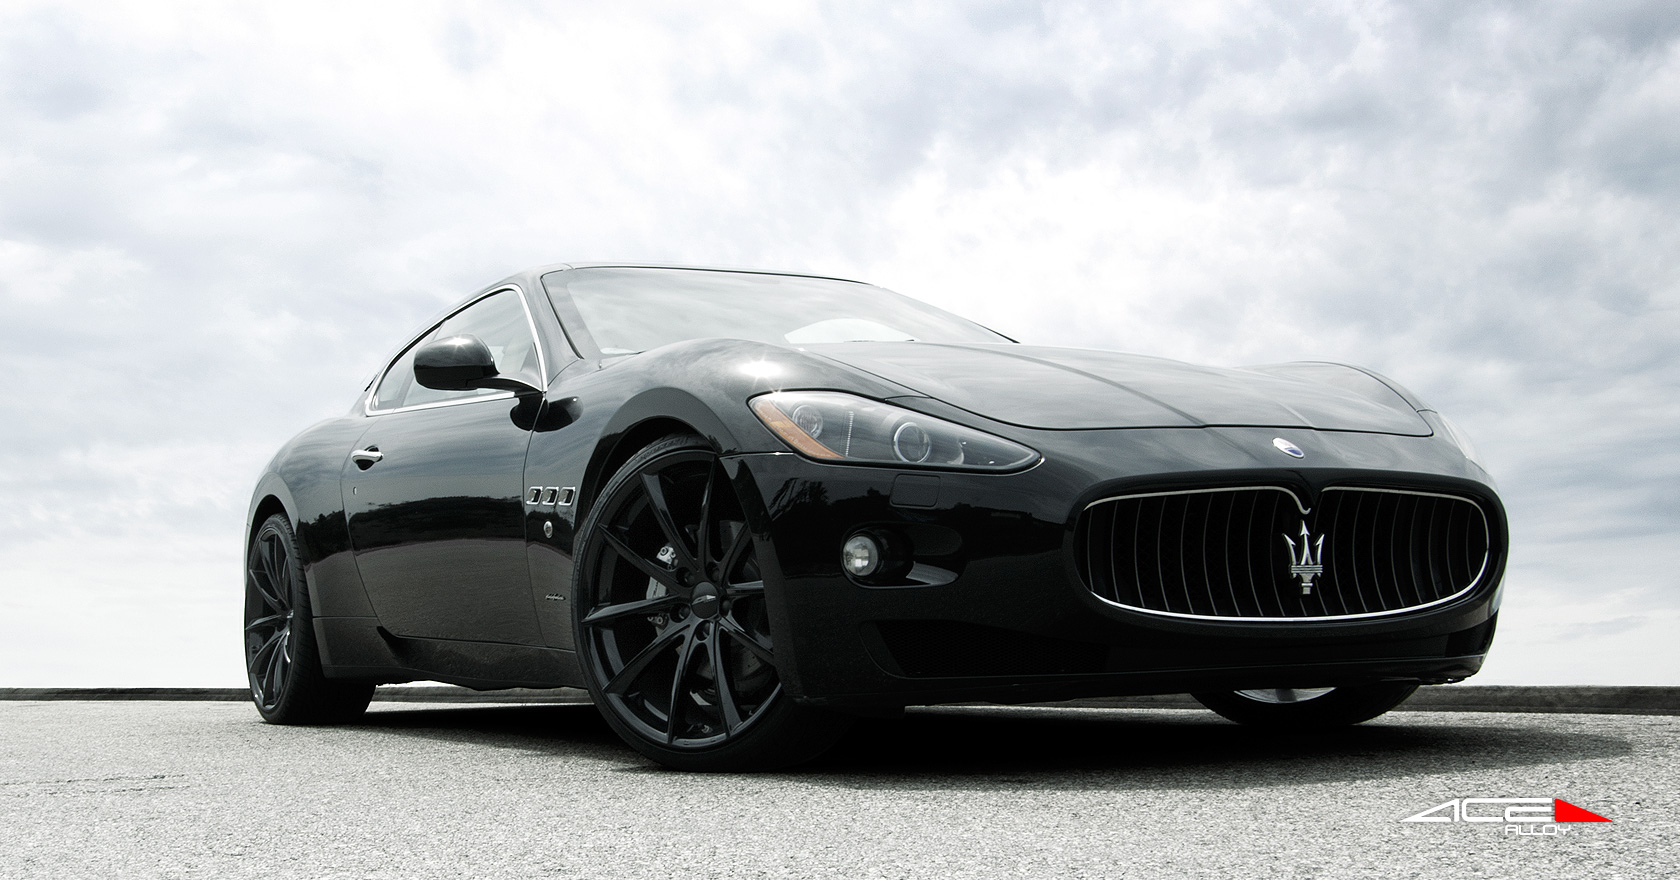 22" wheel Gloss Black Convex D704 Maserati Granturismo avail. 18x7.5 / 19x8.5 / 19x10.0